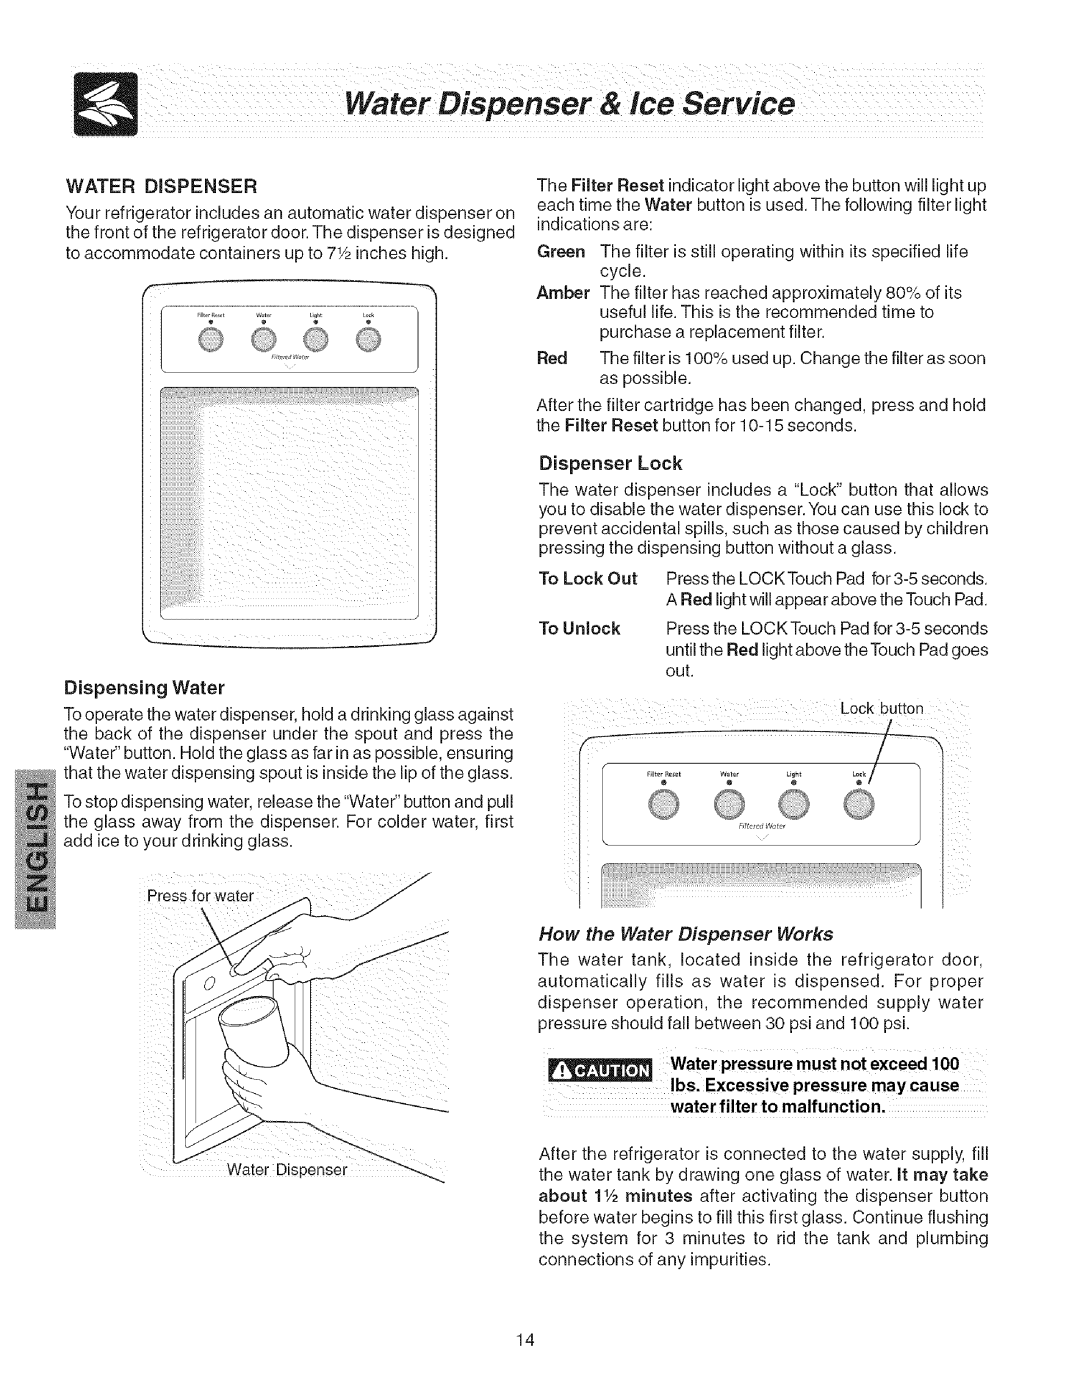 Kenmore 241858201 manual Water Dispenser, Water pressure must not exceed 